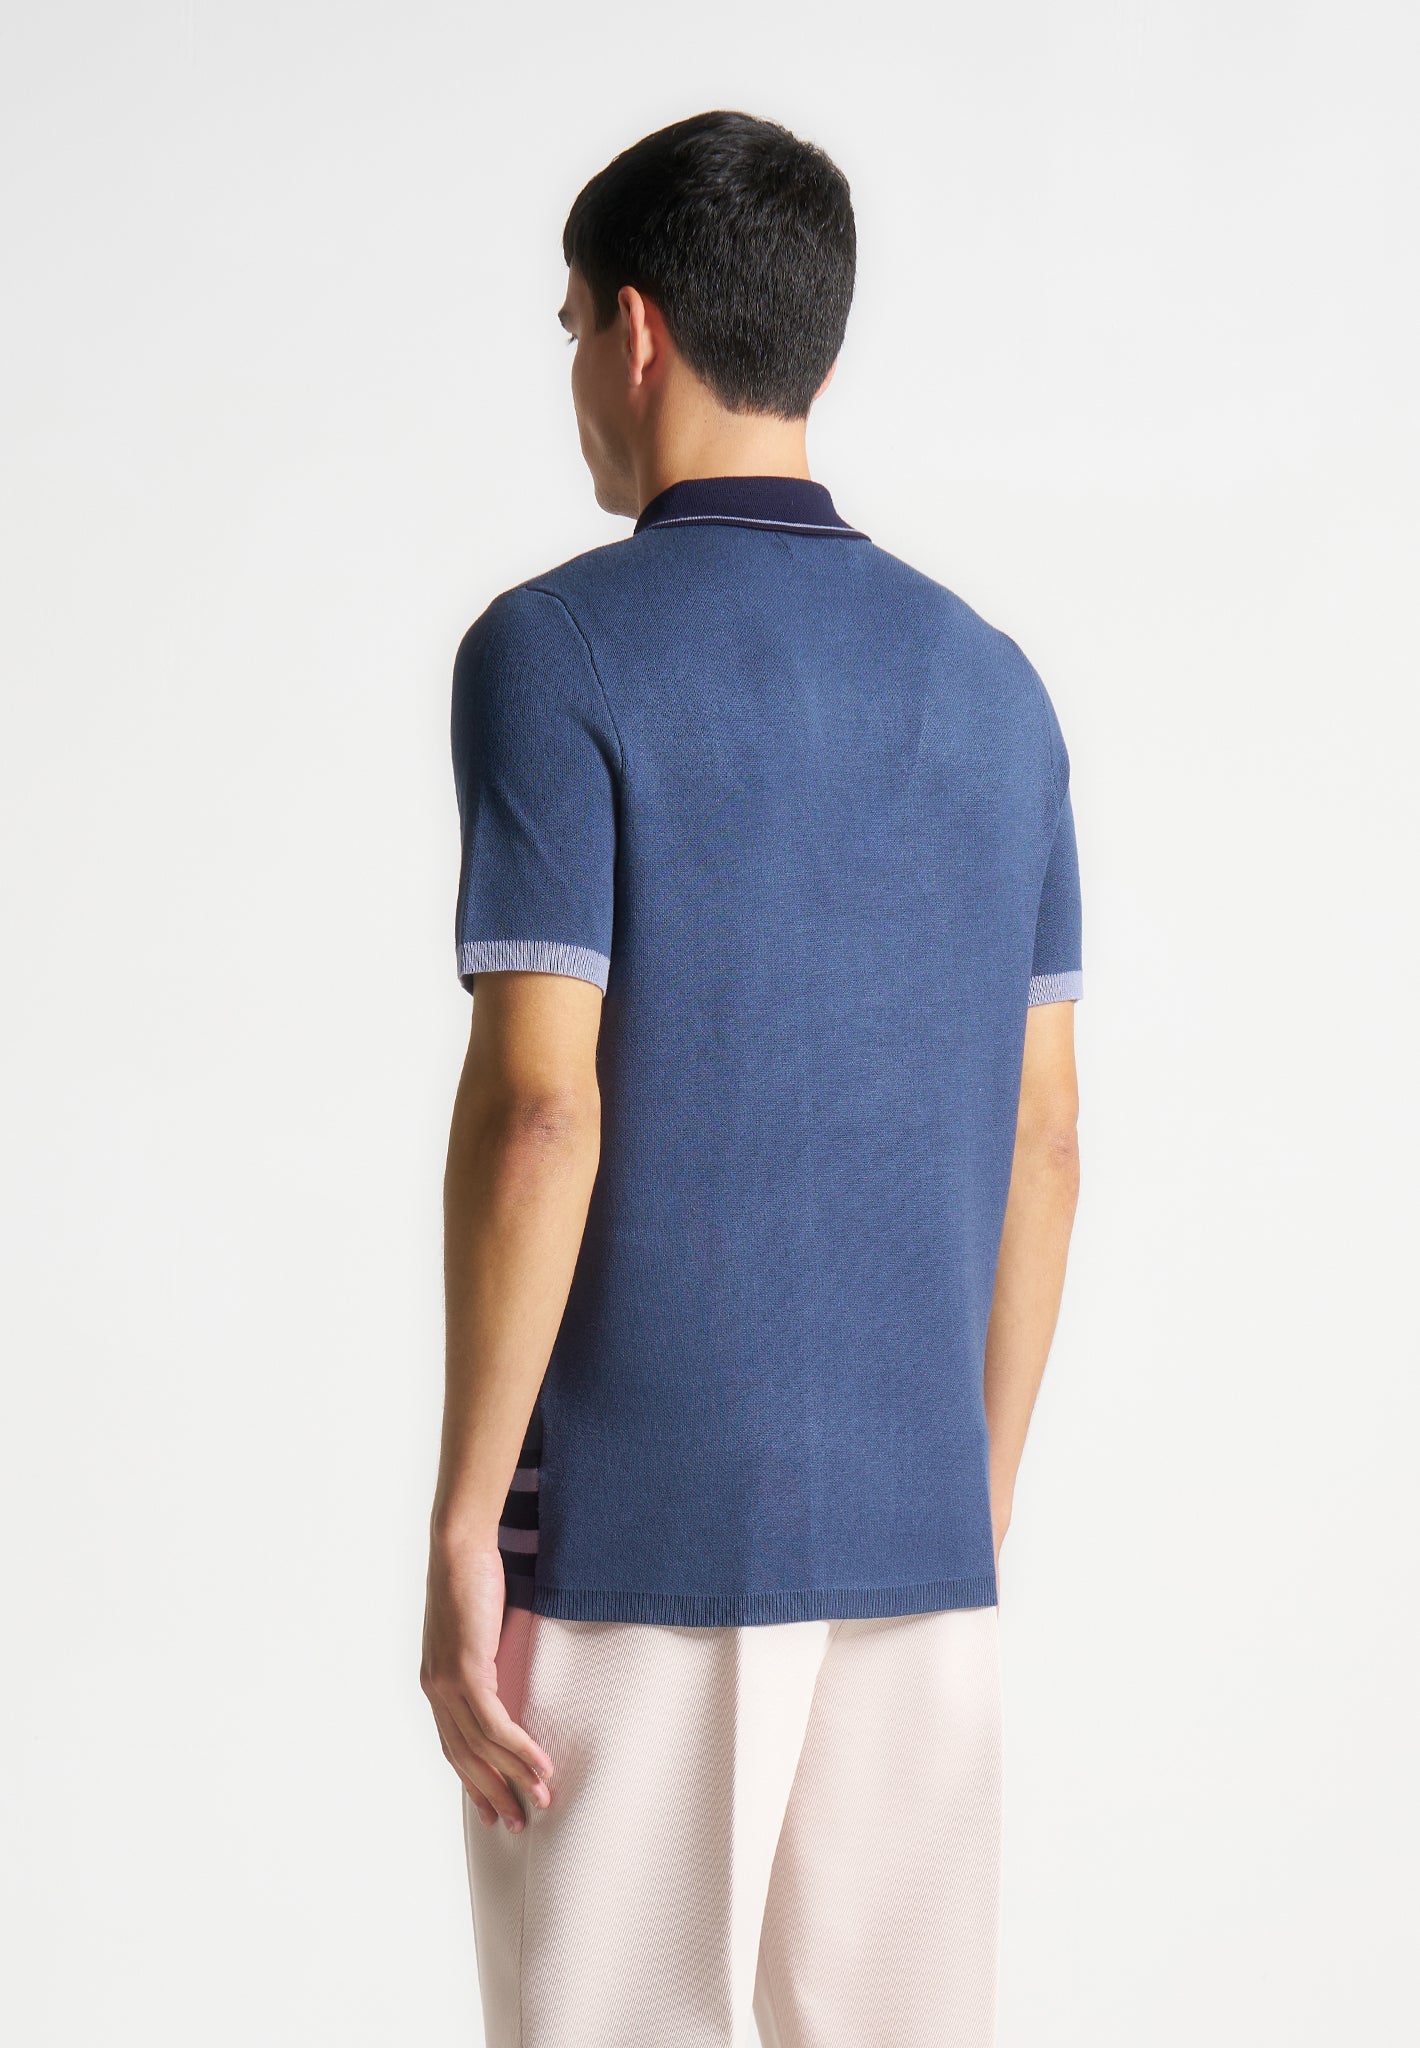 Contrast Border Knit Zip Polo Shirt - Blue | Manière De Voir USA